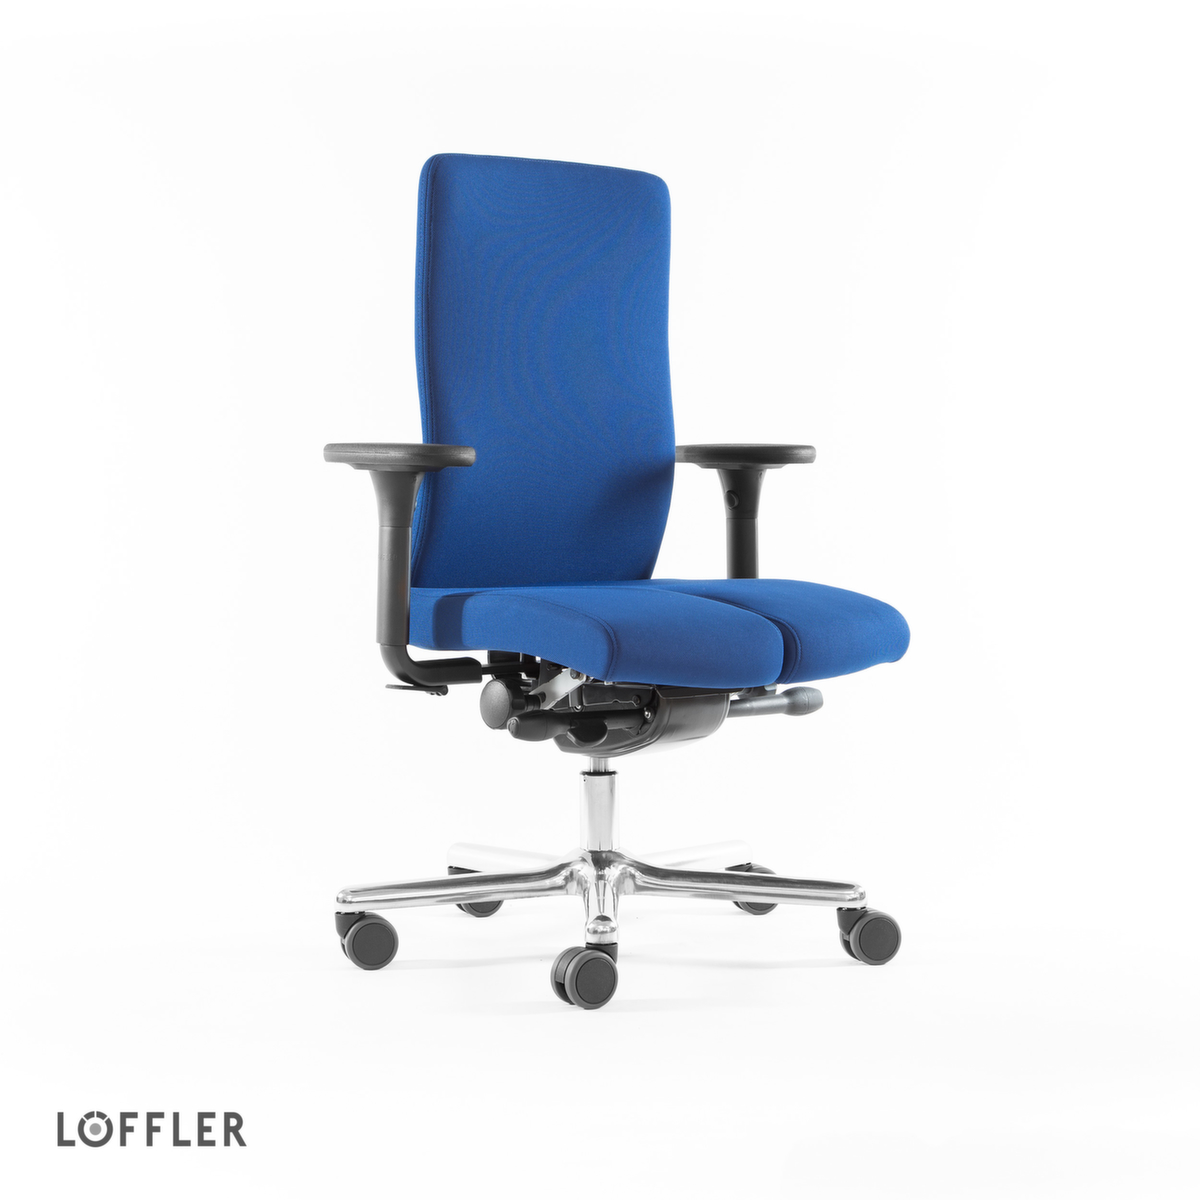 Löffler Bureaustoel met arthrodesezitting, blauw